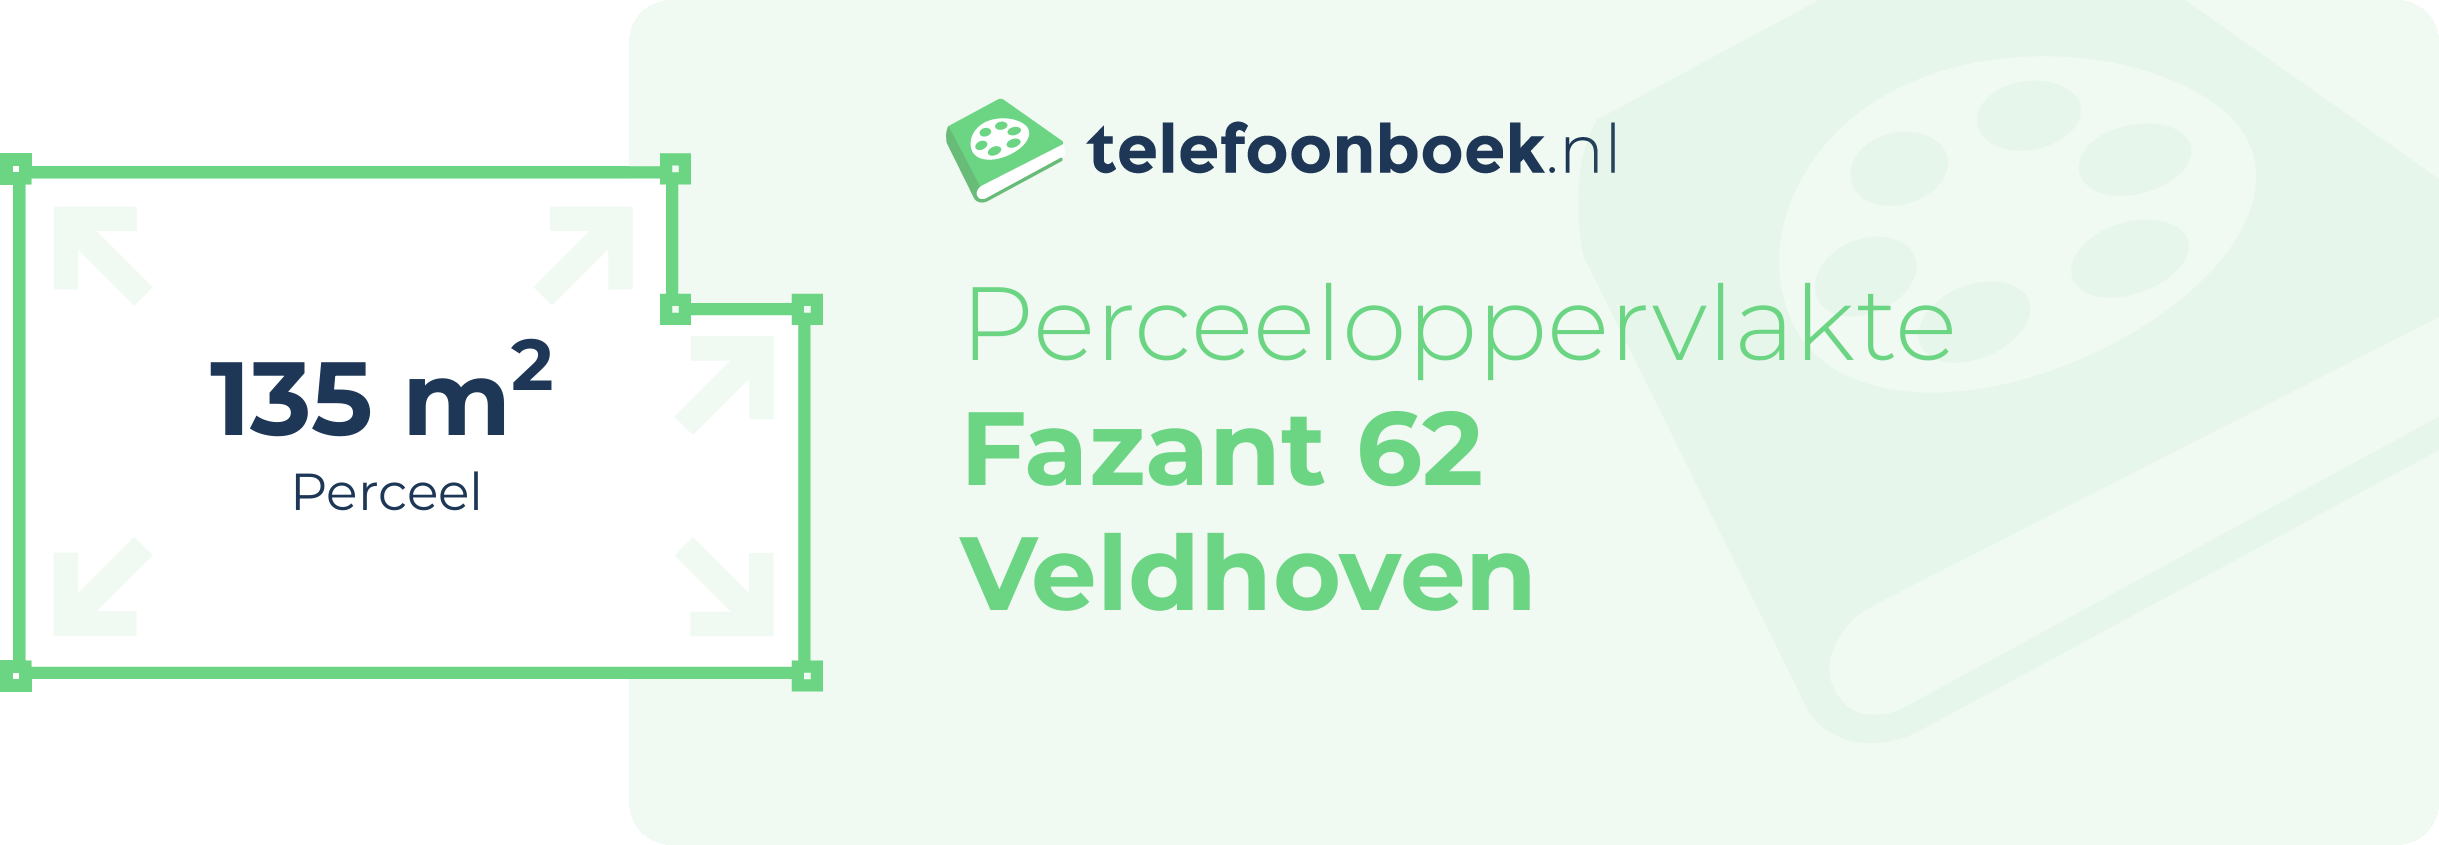 Perceeloppervlakte Fazant 62 Veldhoven